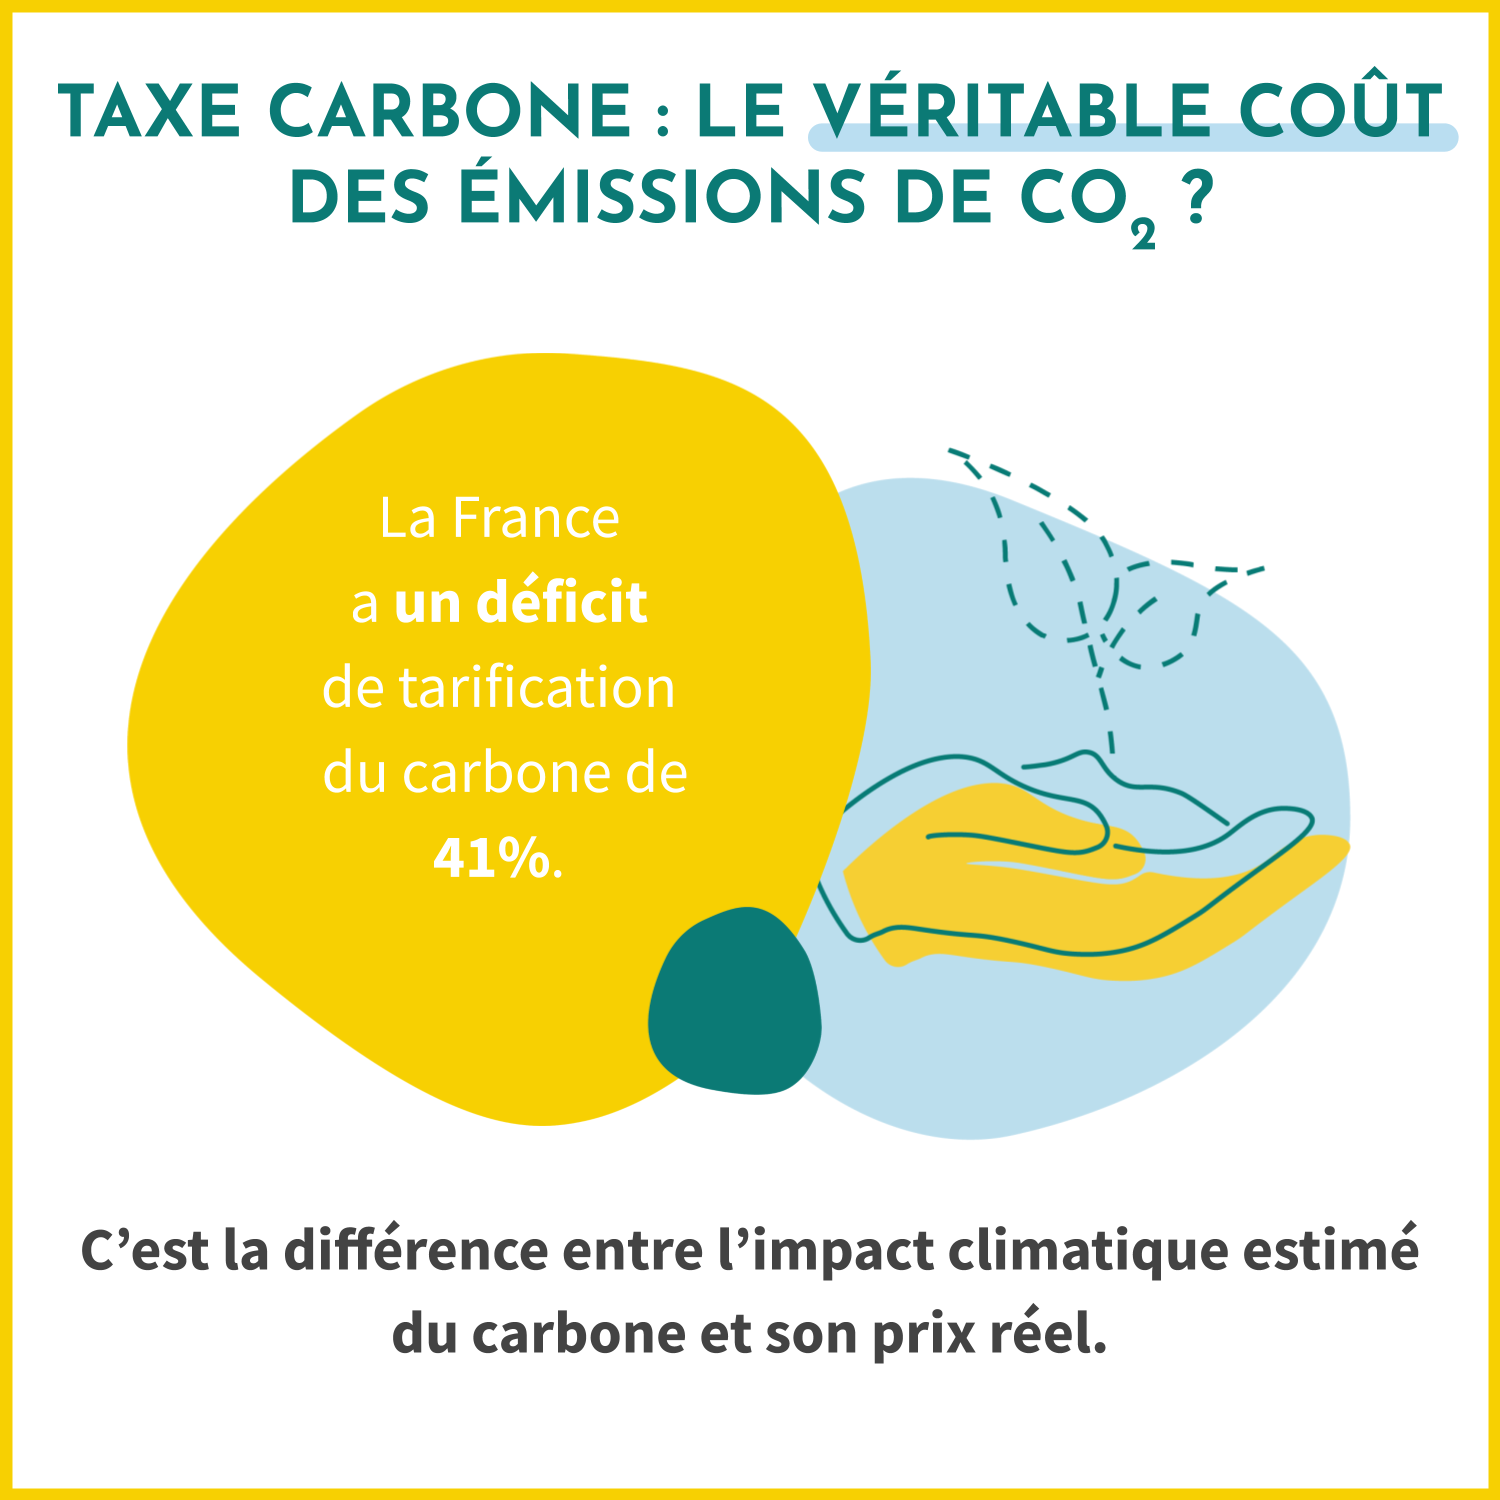 La taxe carbone calcule le déficit de tarification carbone, à savoir la différence entre l'impact climatique estimé du carbone et son prix réel. En France, le déficit est de 41%.